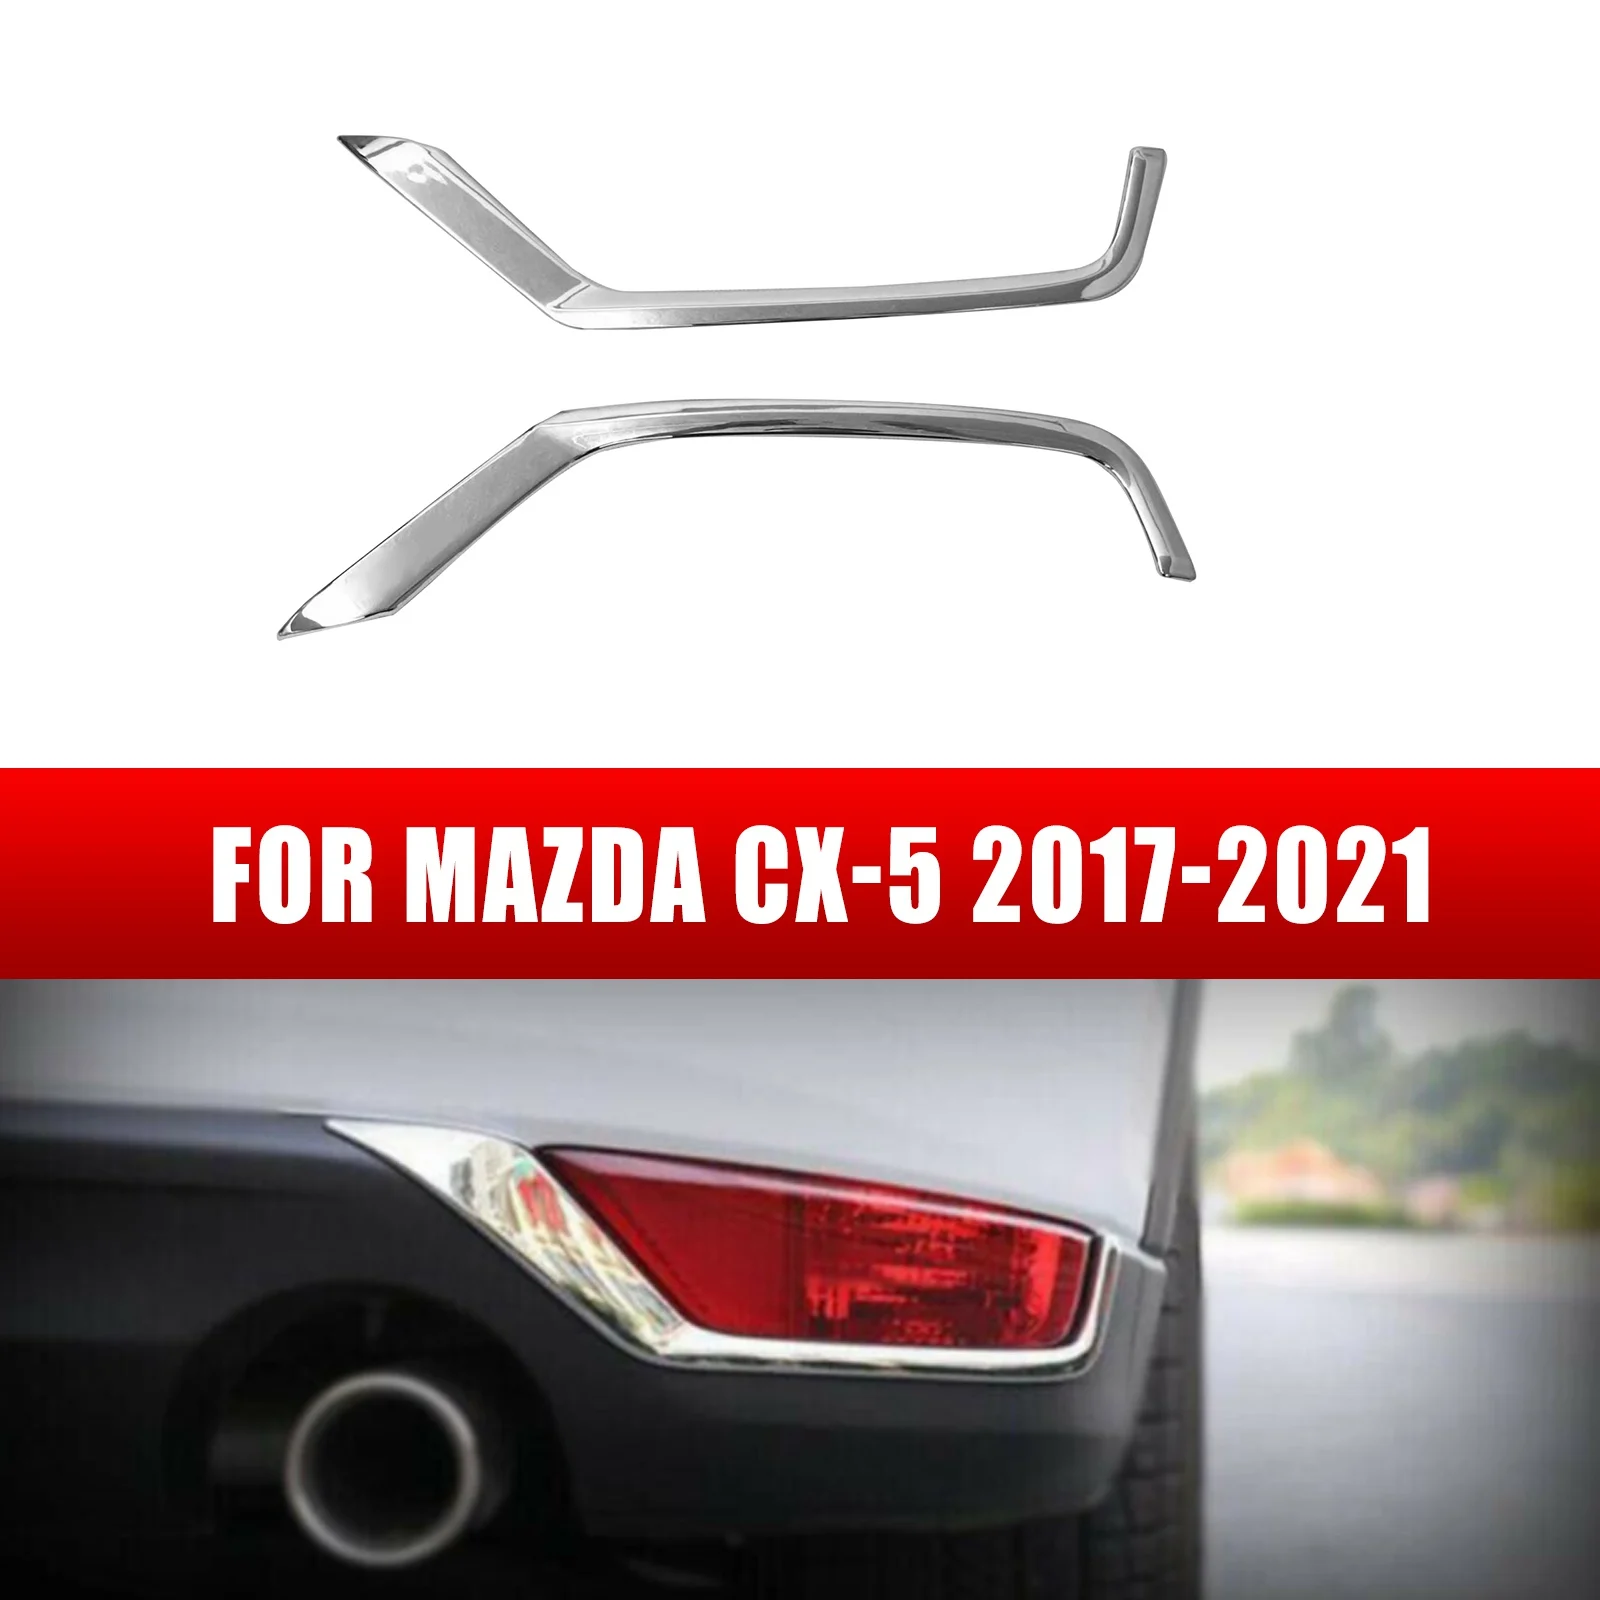 

Автомобильные аксессуары для Mazda CX-5 2017-2021, хромированные задние фары, полосатая крышка